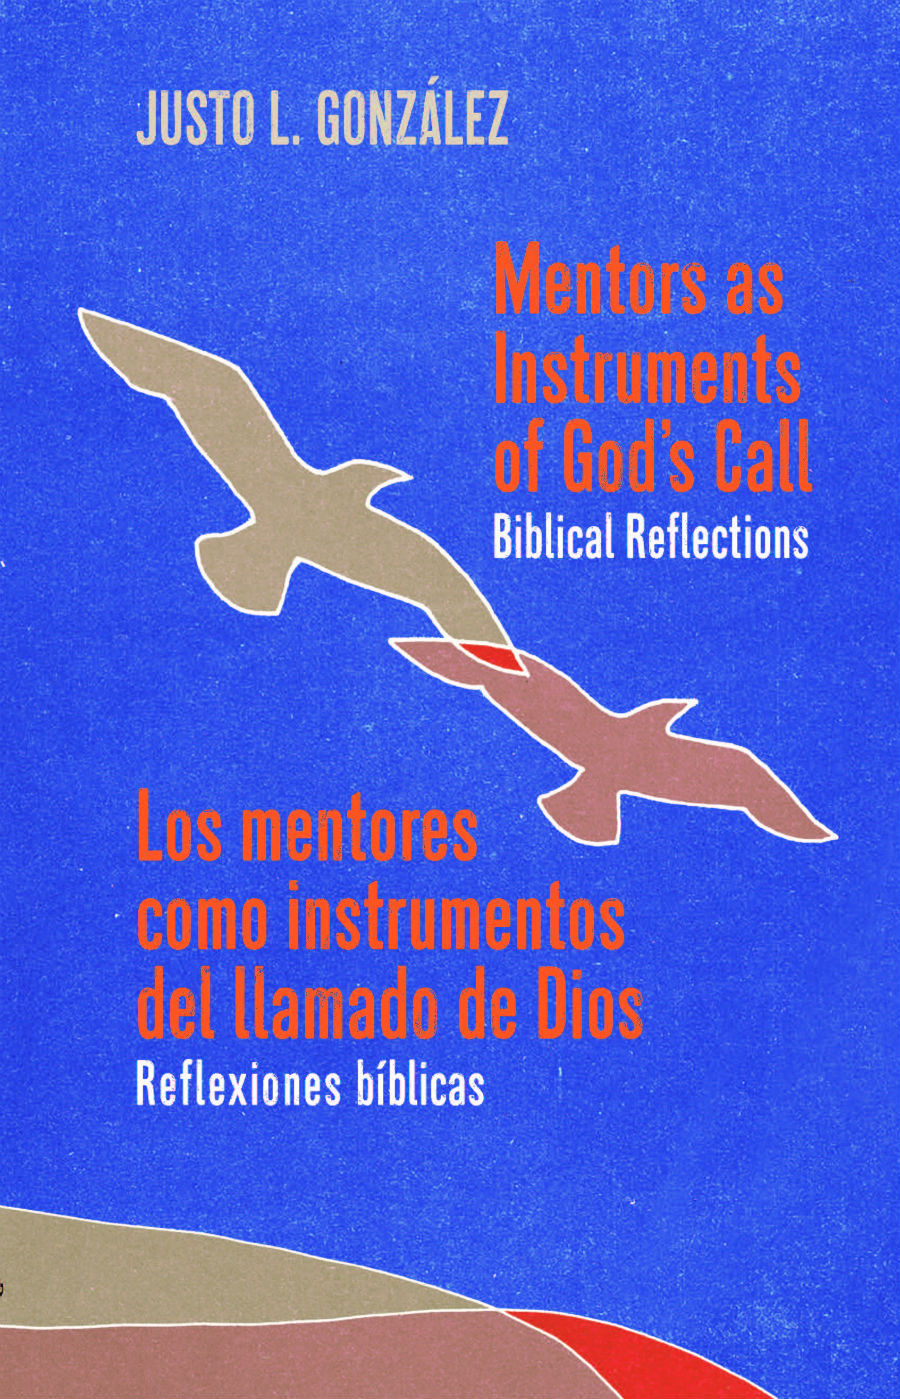 Book cover: Los Mentores como Instrumentos del Llamado de Dios: Reflexiones Bíblicas / Mentors as Instruments of God's Call: Biblical Reflections Bilingual Edition